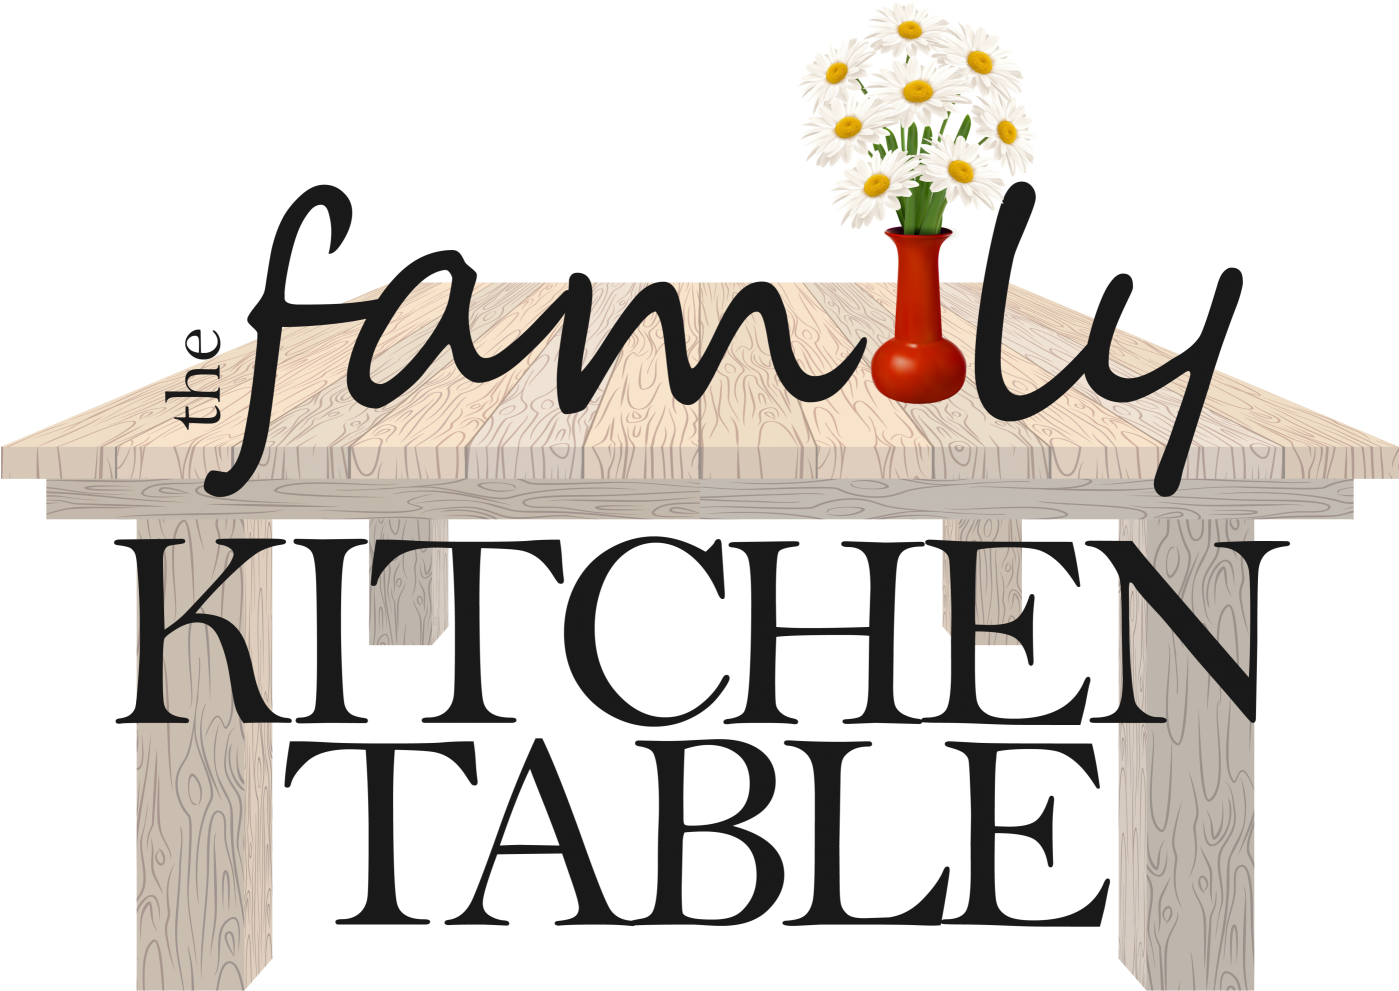 The Family Kitchen Table - The Family Kitchen Table (1398x1000)